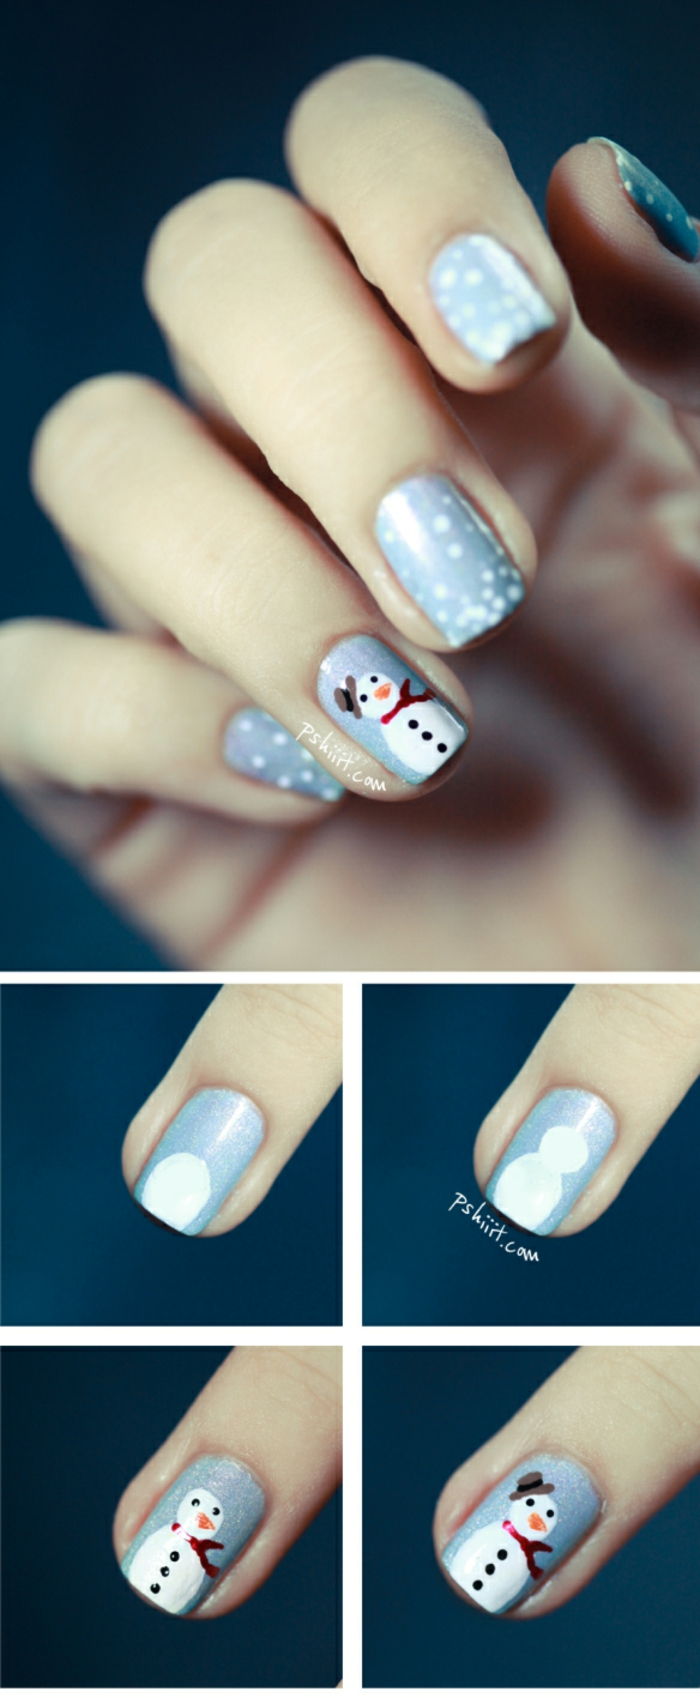 Vinterns naglar med snögubbe och små snöflingor i fyra steg, ljusblå mark, oval nagelform